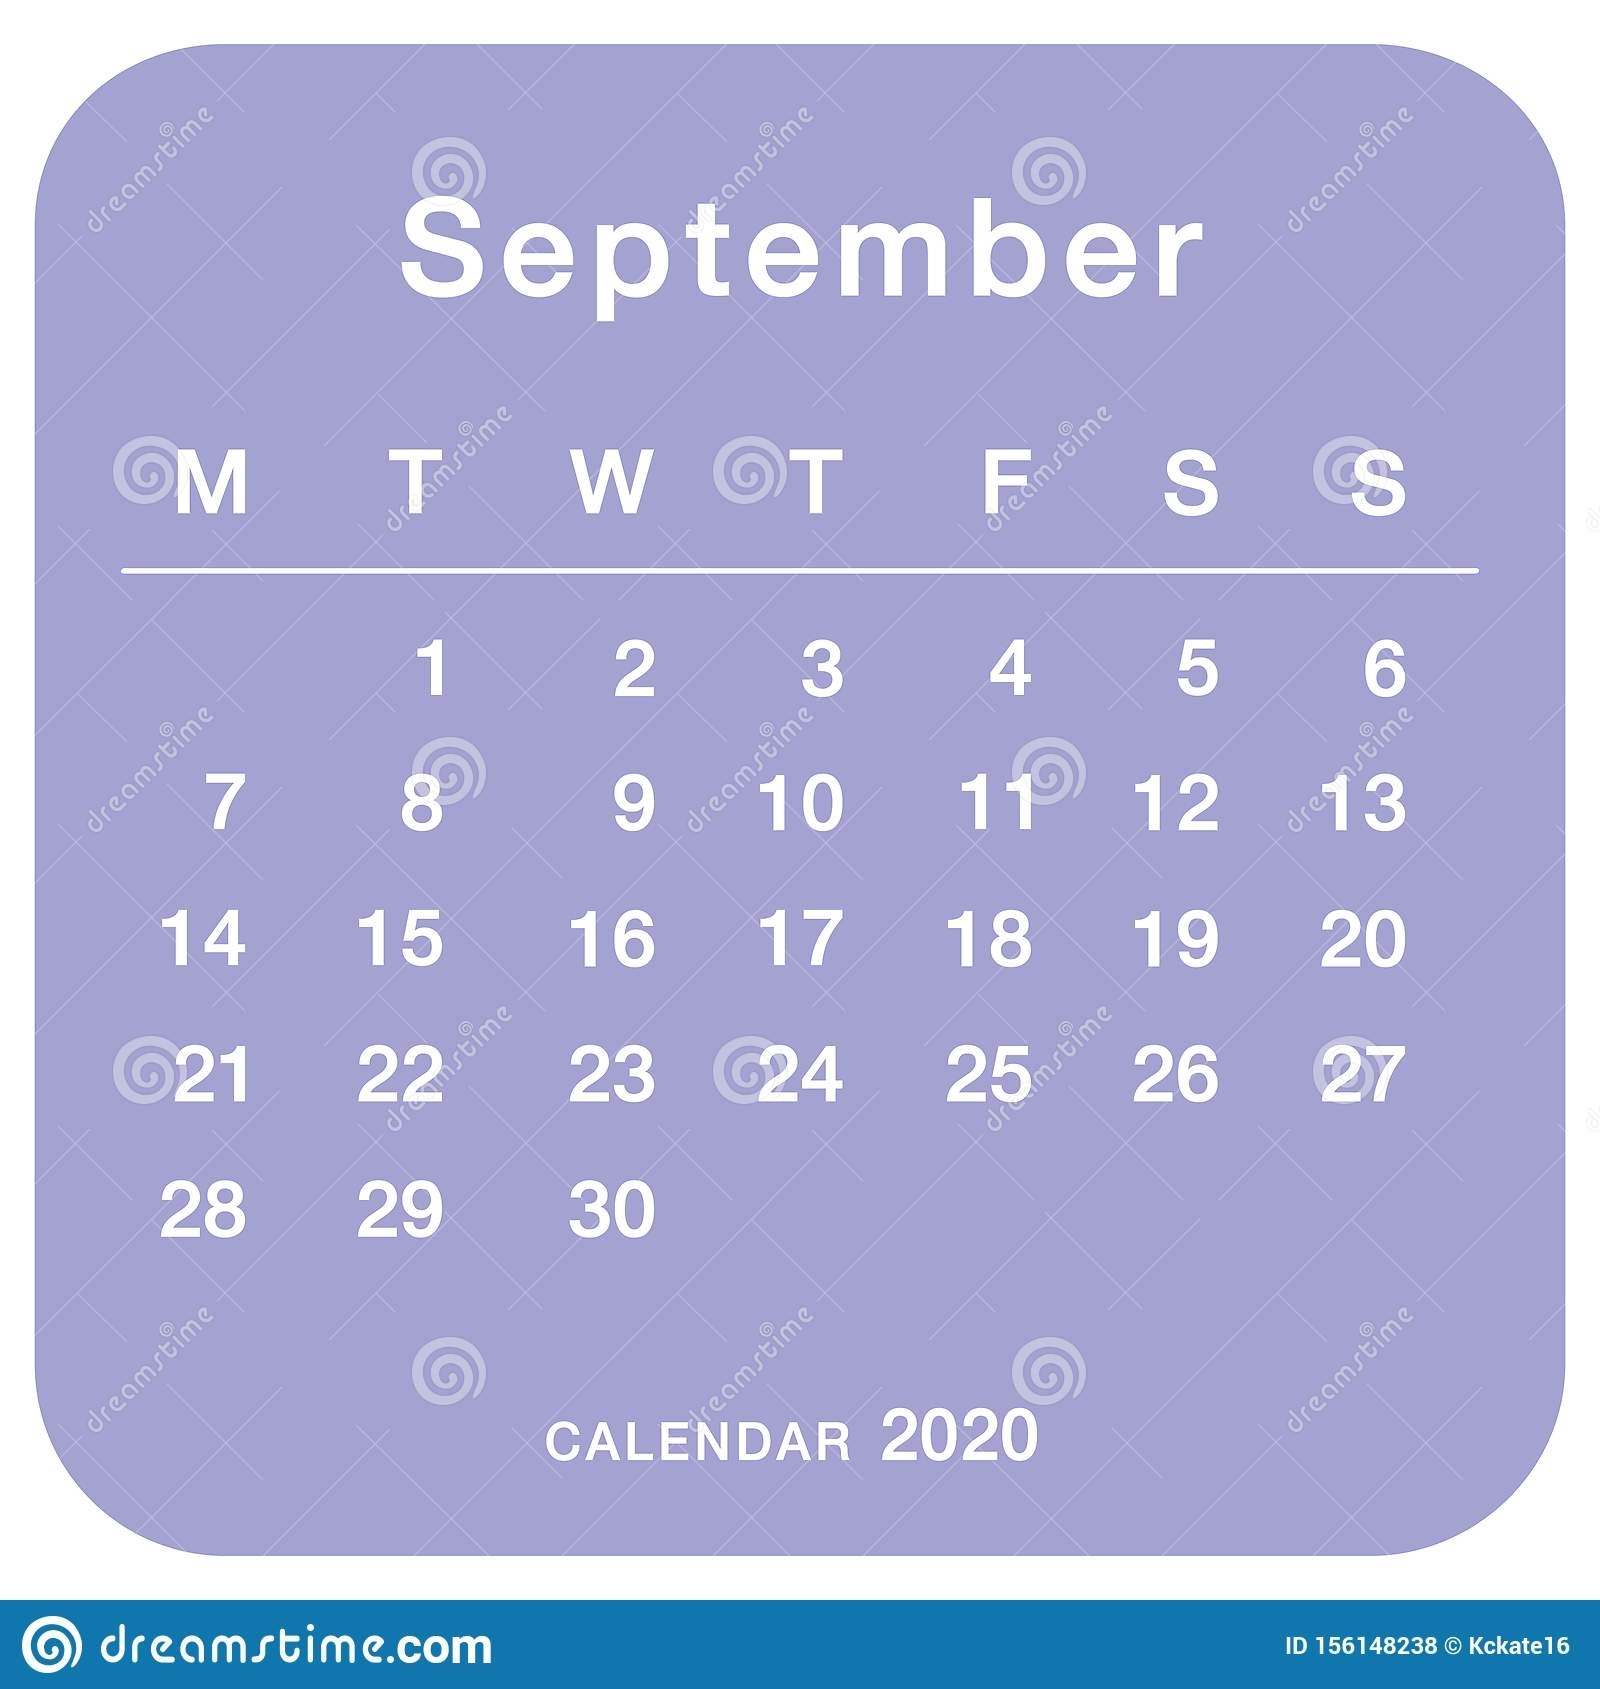 September 2020 Planning Calendar . Simple September 2020